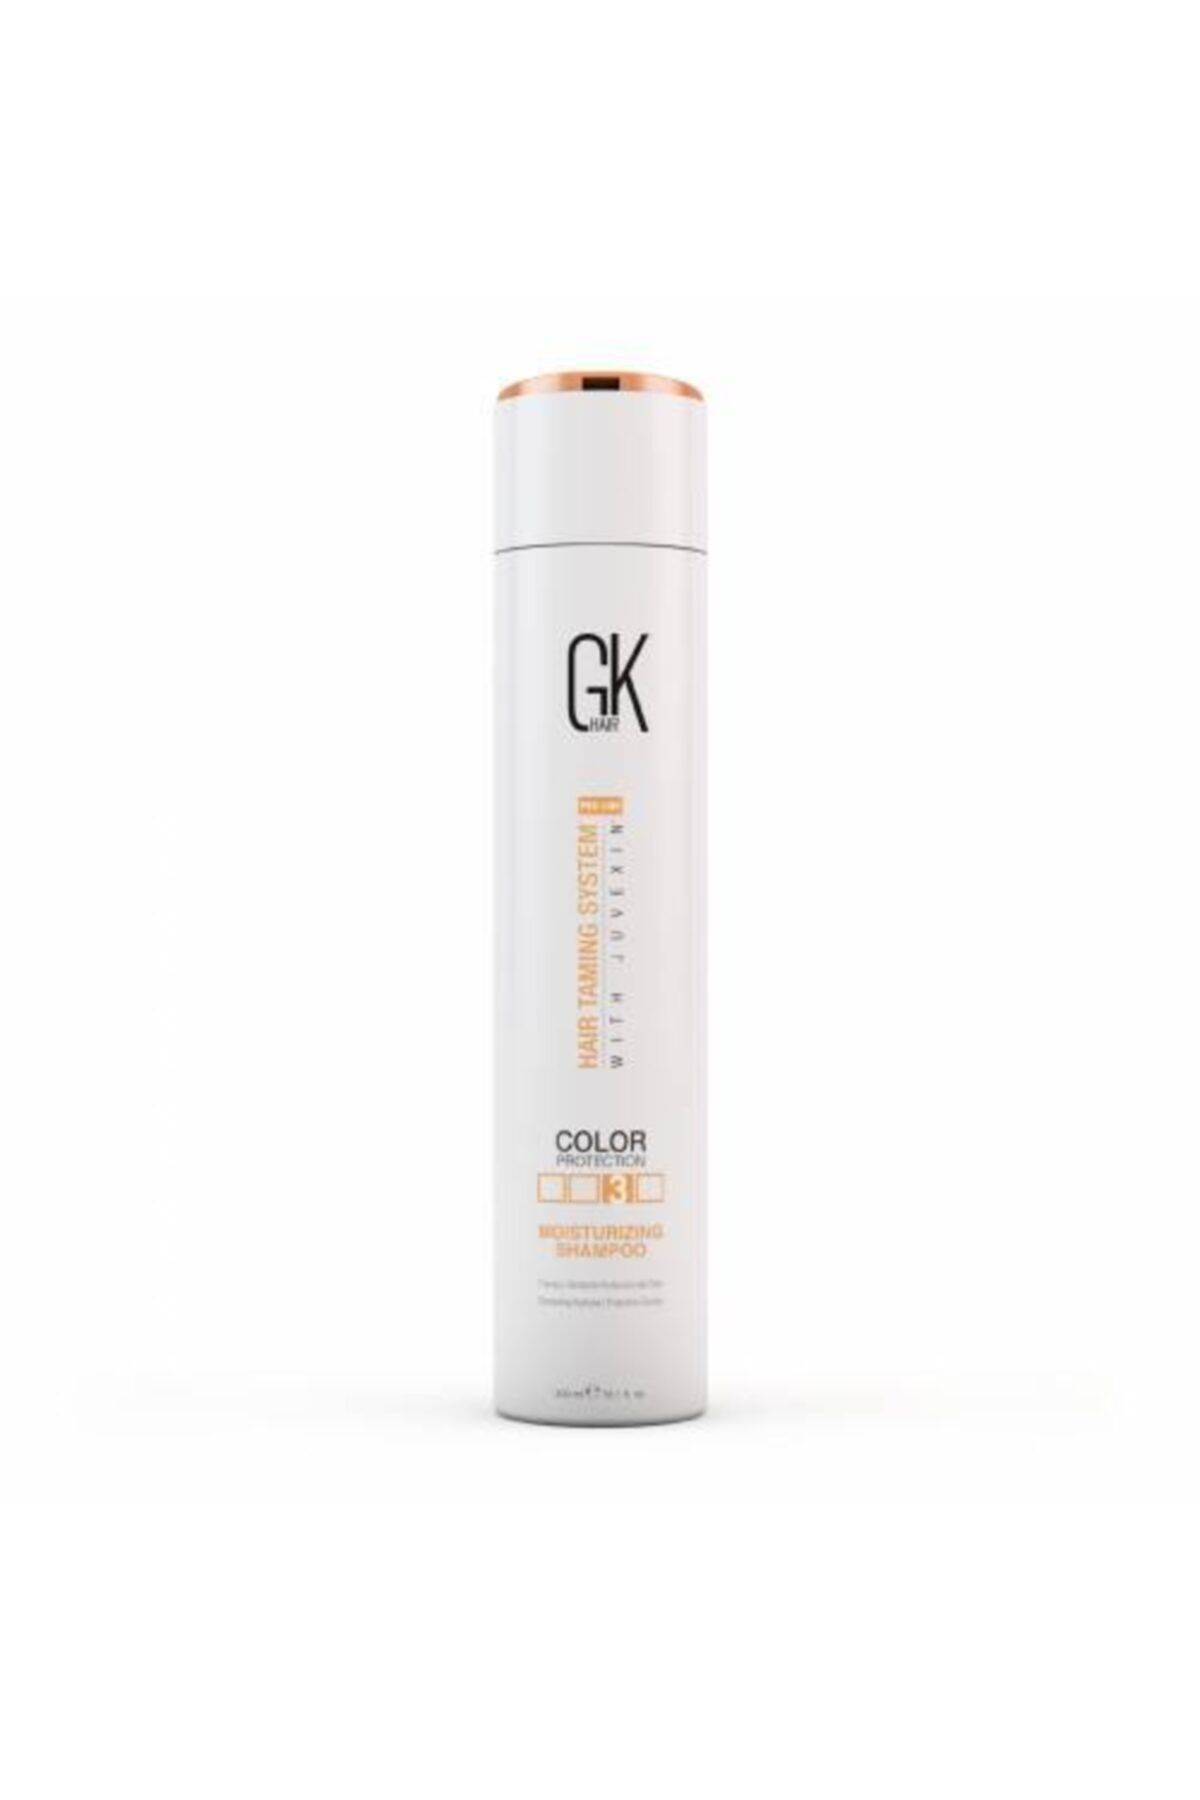 GK HAIR Global Keratin Moisturising Nemlendirici Şampuan 300 ML Pareben Gluten Sulfat İçermez